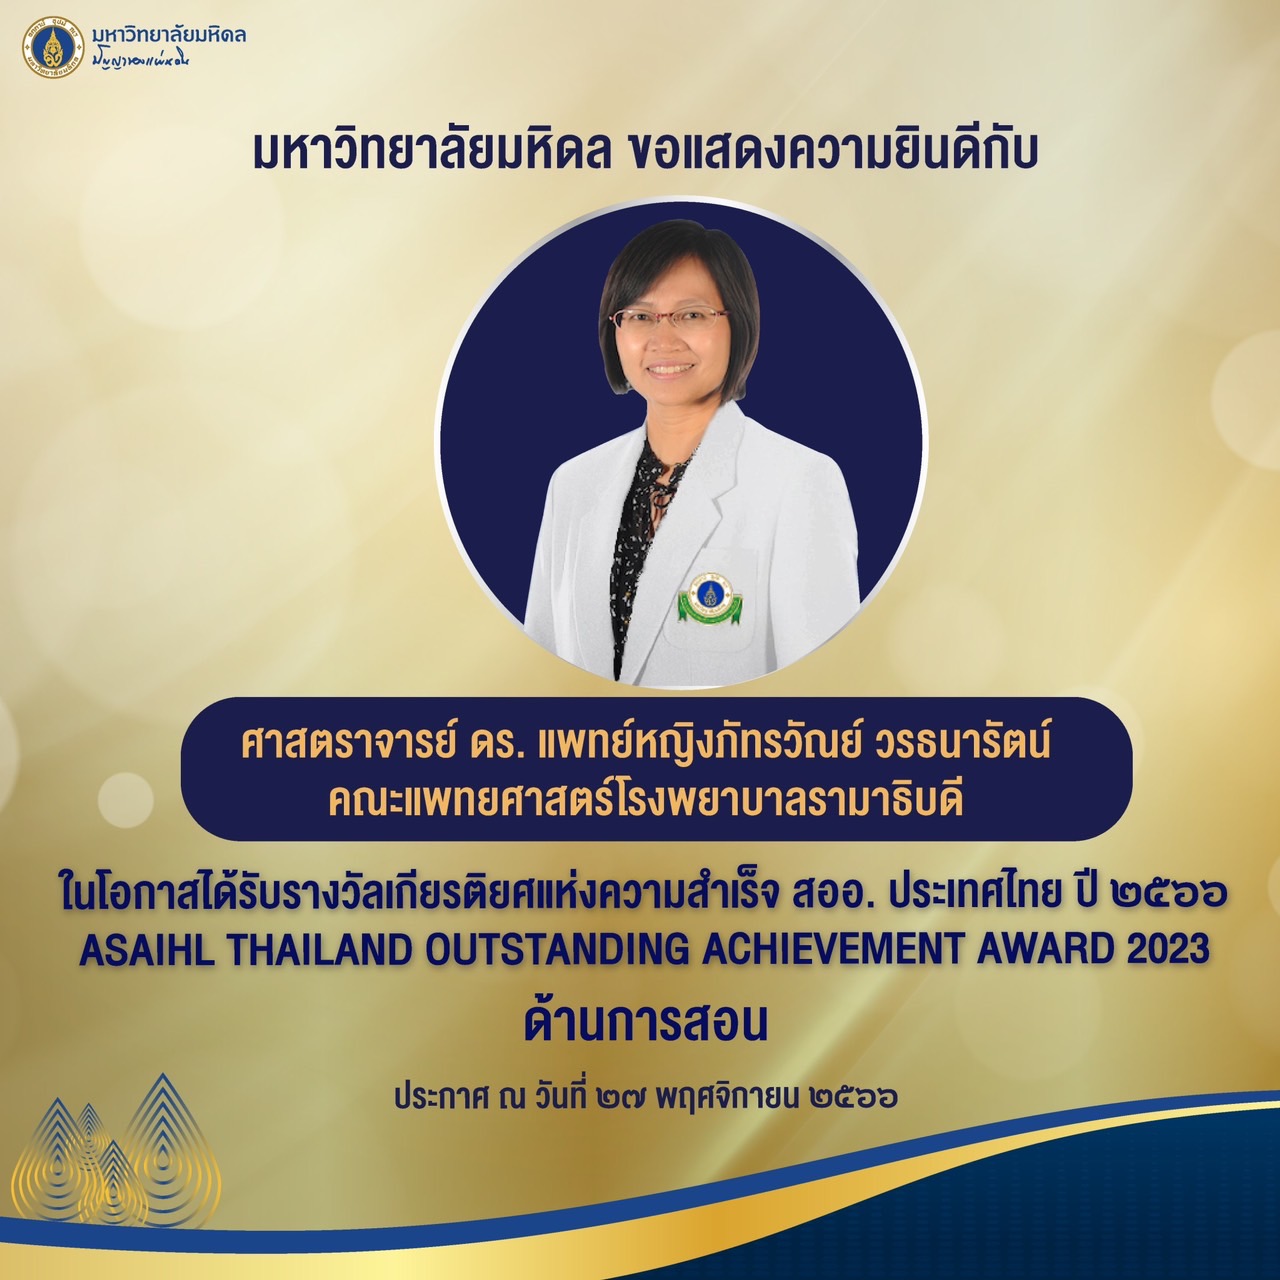 ภาควิชาออร์โธปิดิกส์ ขอแสดงความยินดีแด่ ศาสตราจารย์ ดร.แพทย์หญิงภัทรวัณย์ วรธนารัตน์ได้รับรางวัลเกียรติยศแห่งความสำเร็จ สออ. ประเทศไทย ประจำปี 2566 ด้านการสอน